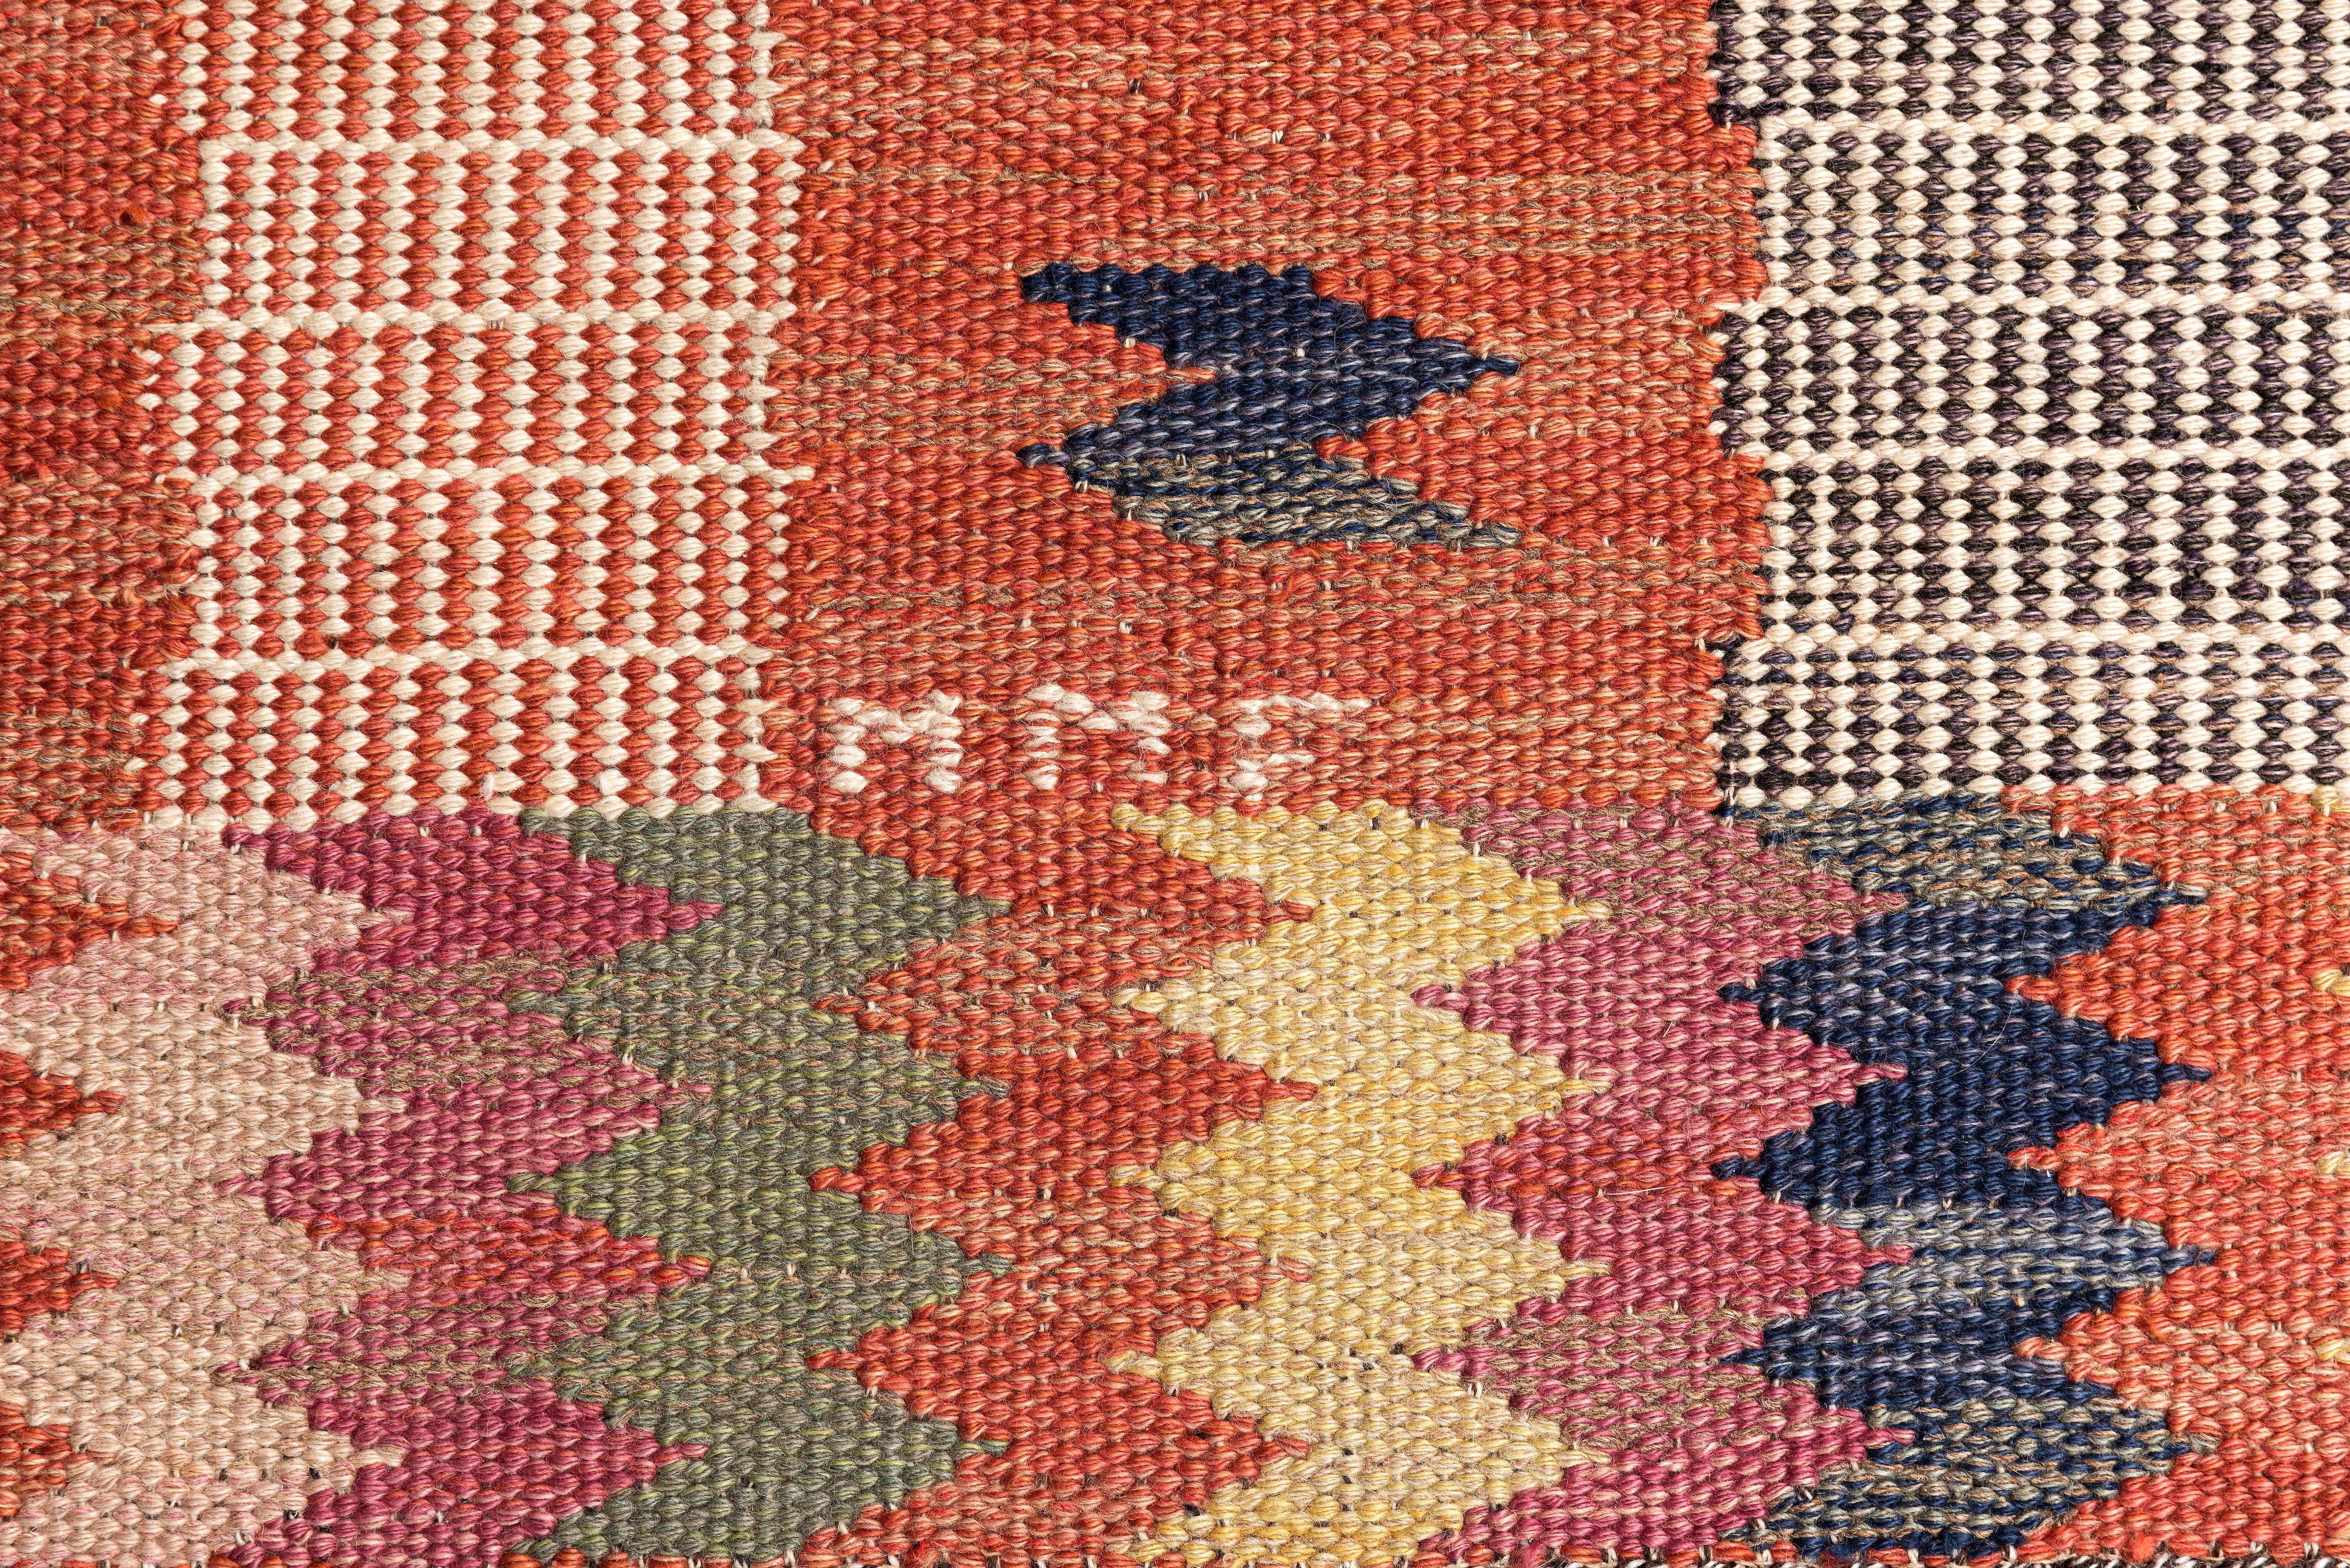 Hand-Knotted Swedish Modern Märta Måås Fjerterström Flat-Weave Rug Signed MMF, 1937 For Sale